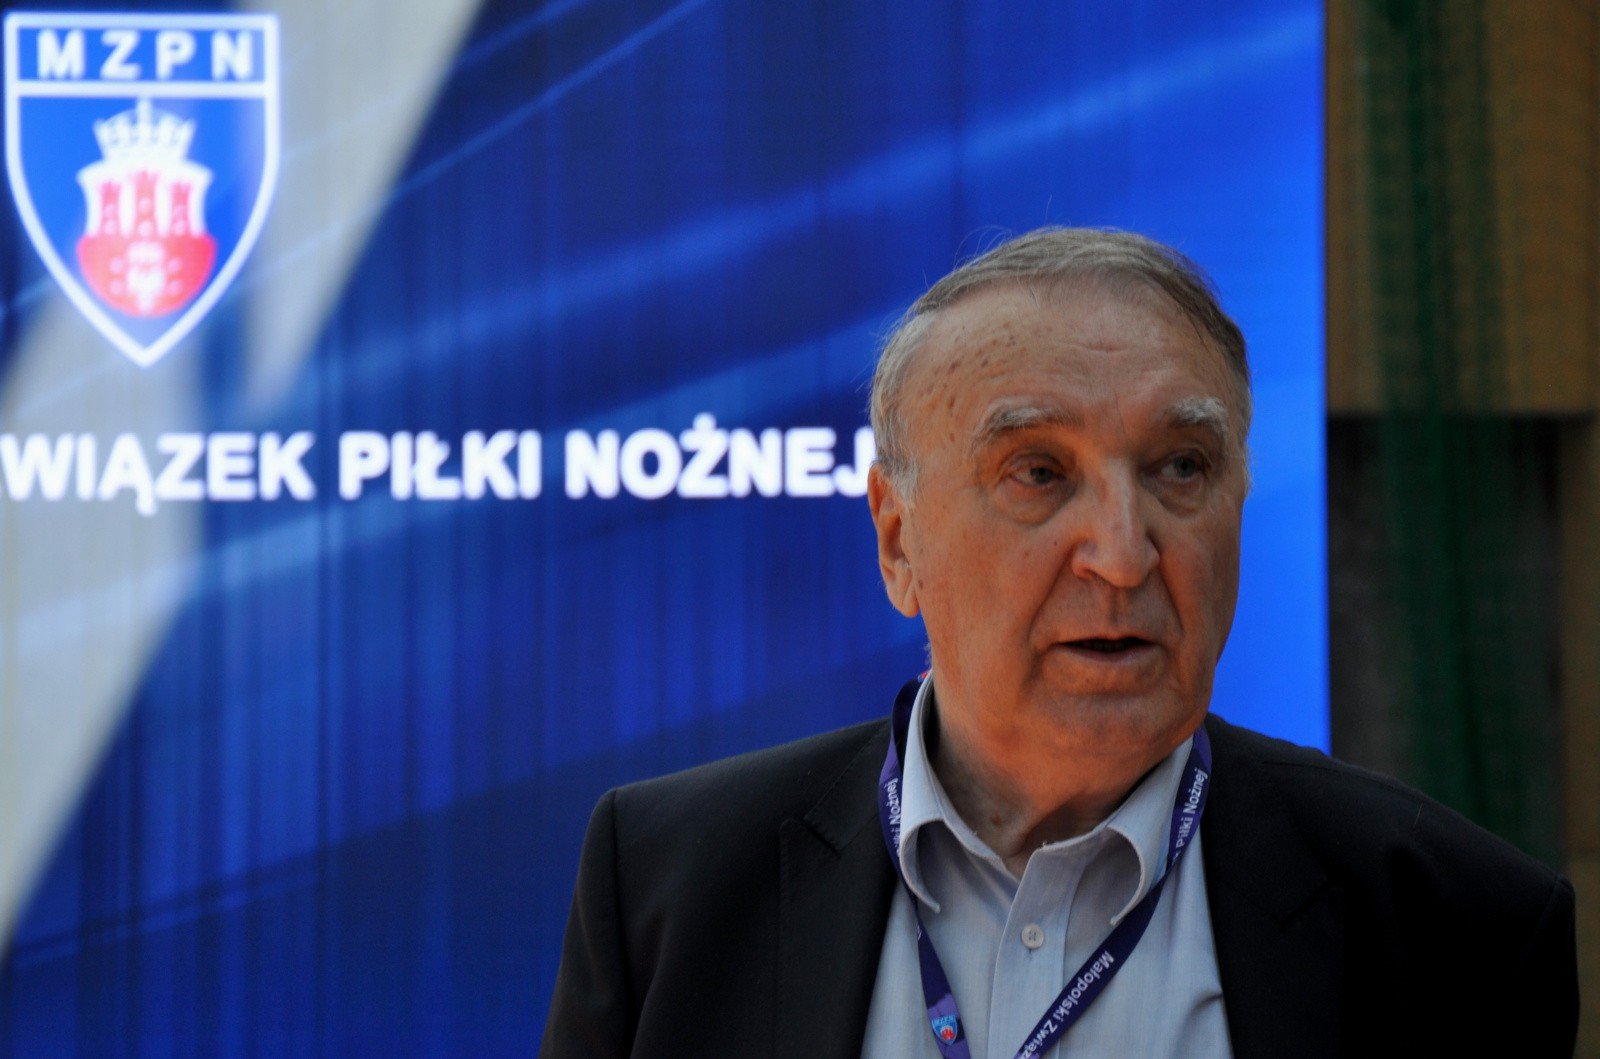 Ryszard Niemiec nie wystartuje w czerwcowych wyborach na stanowisko prezesa Małopolskiego Związku Piłki Nożnej